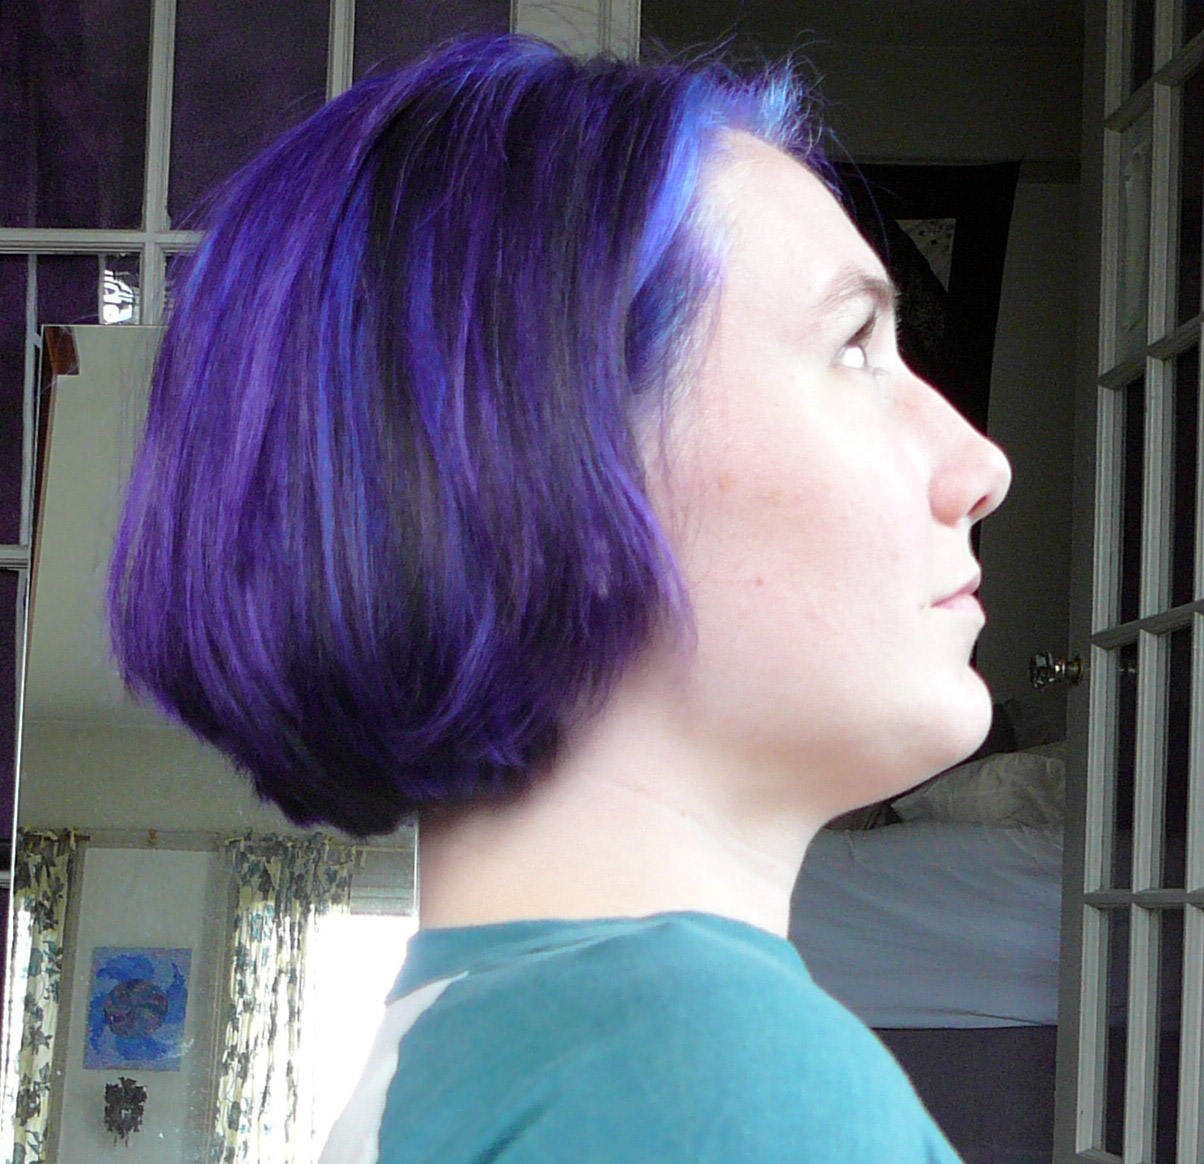 purplehairside.jpg